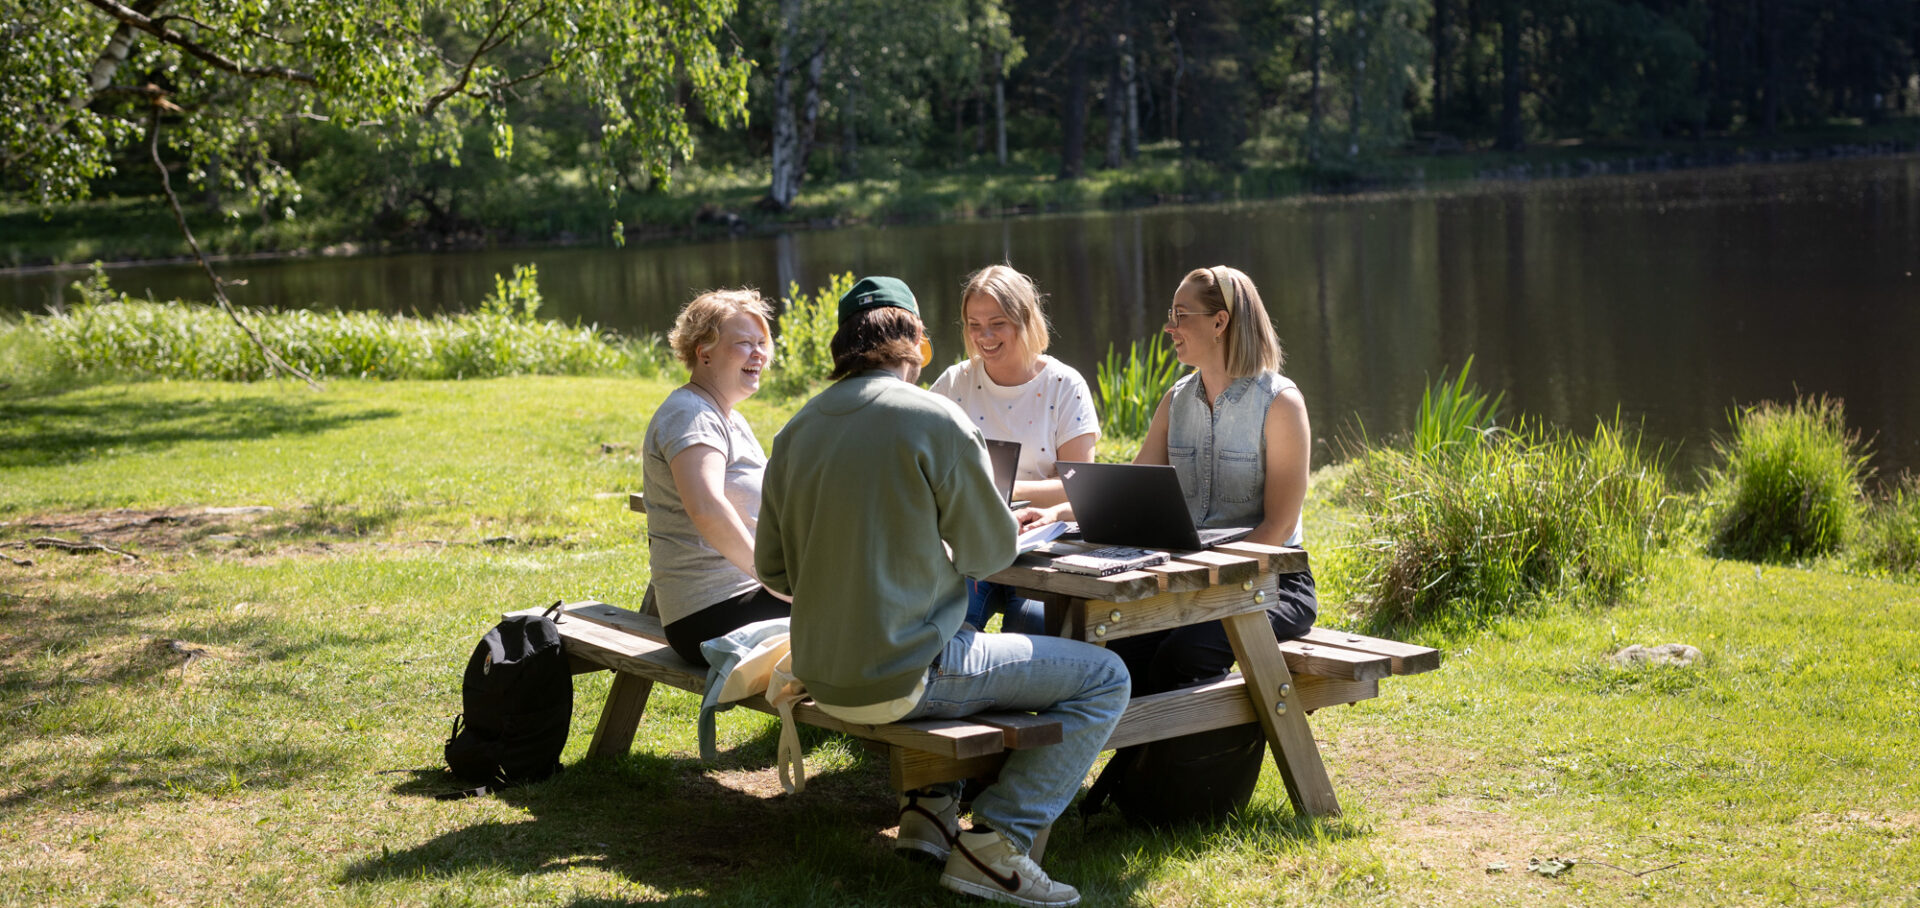 Neljä henkilöä istuu pöydän ääressä ja keskustelee lammen rannalla aurinkoisena kesäpäivänä.